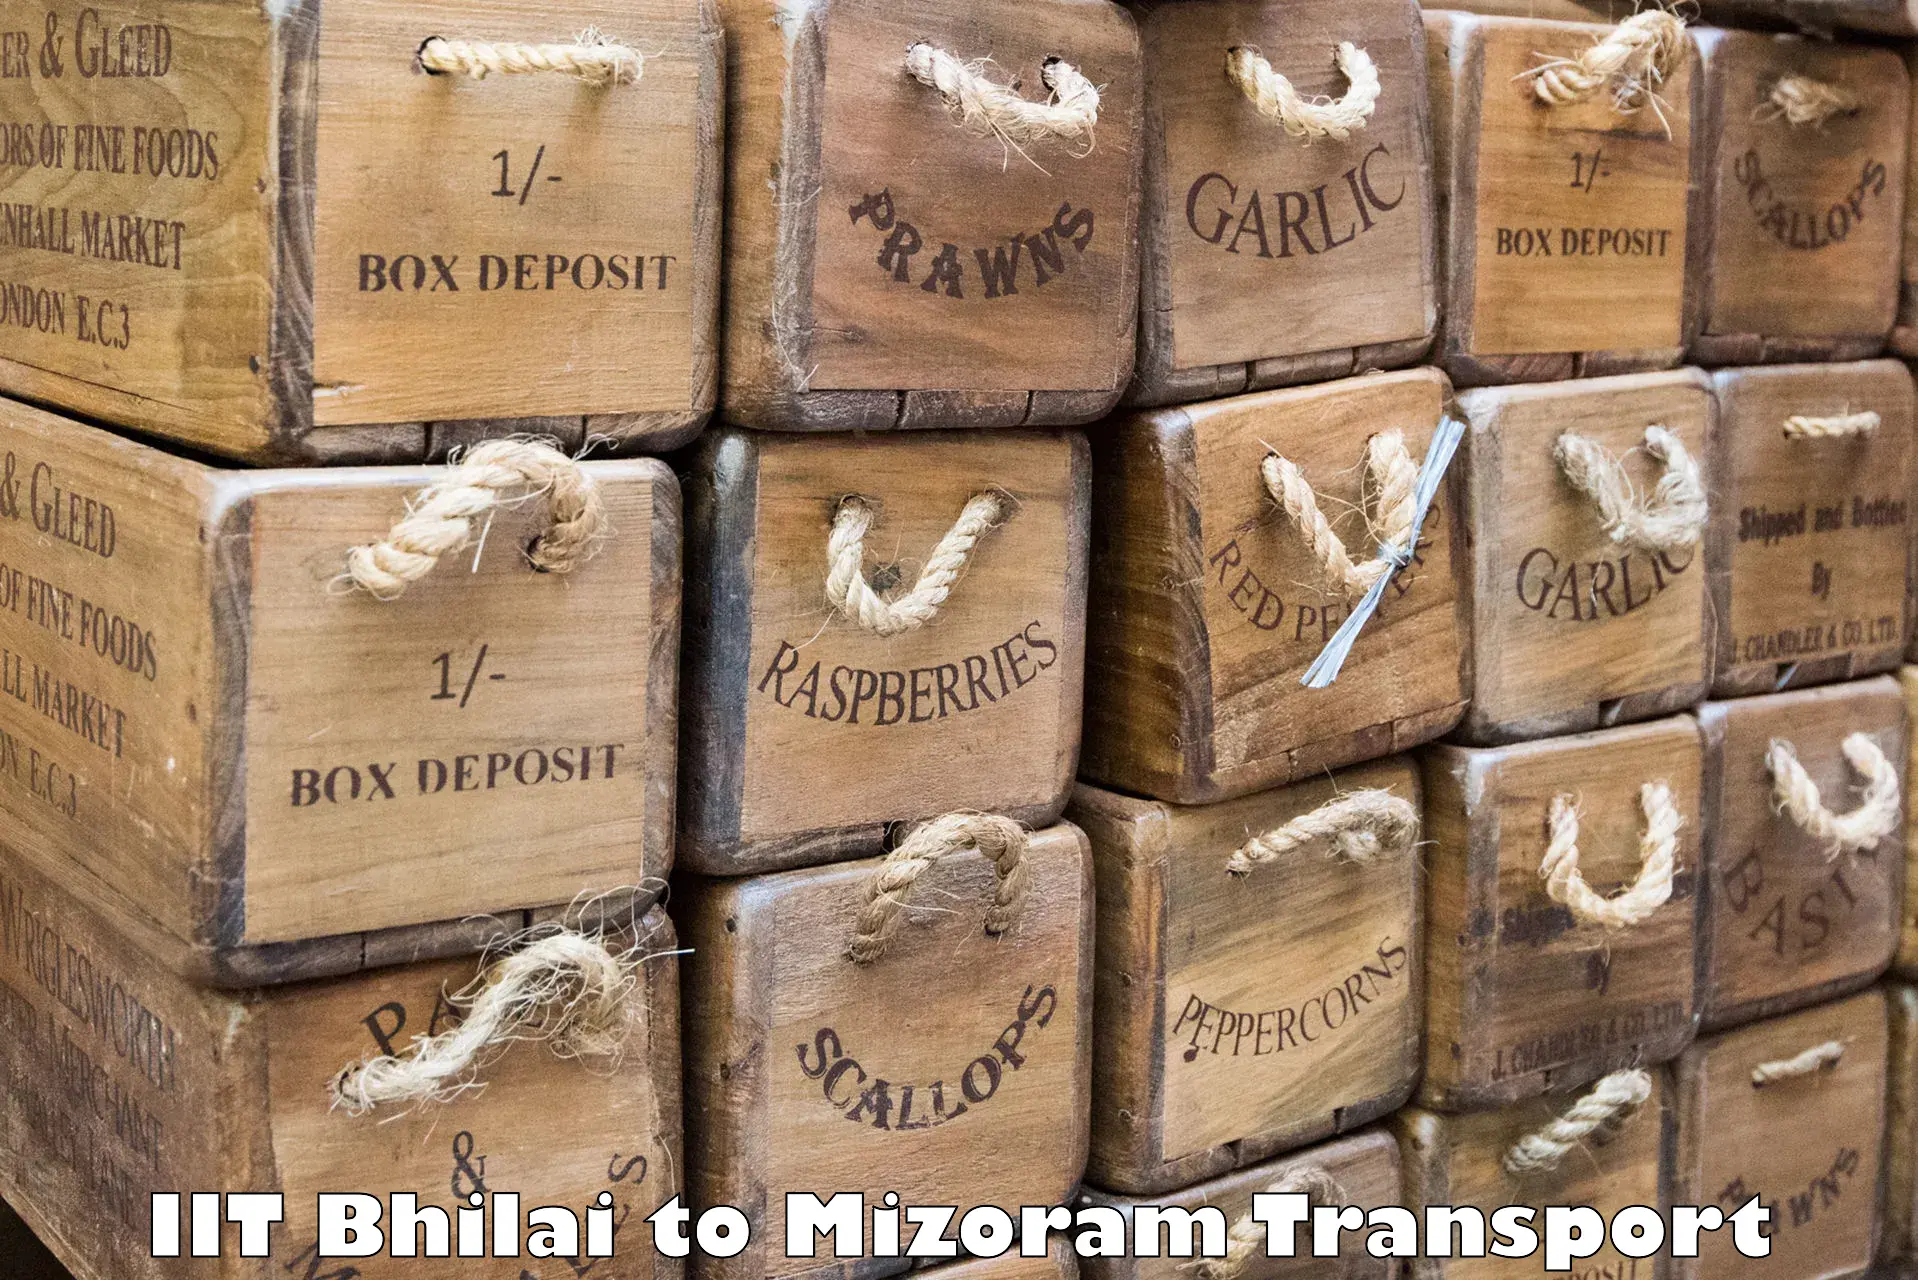 Cargo train transport services IIT Bhilai to Mizoram